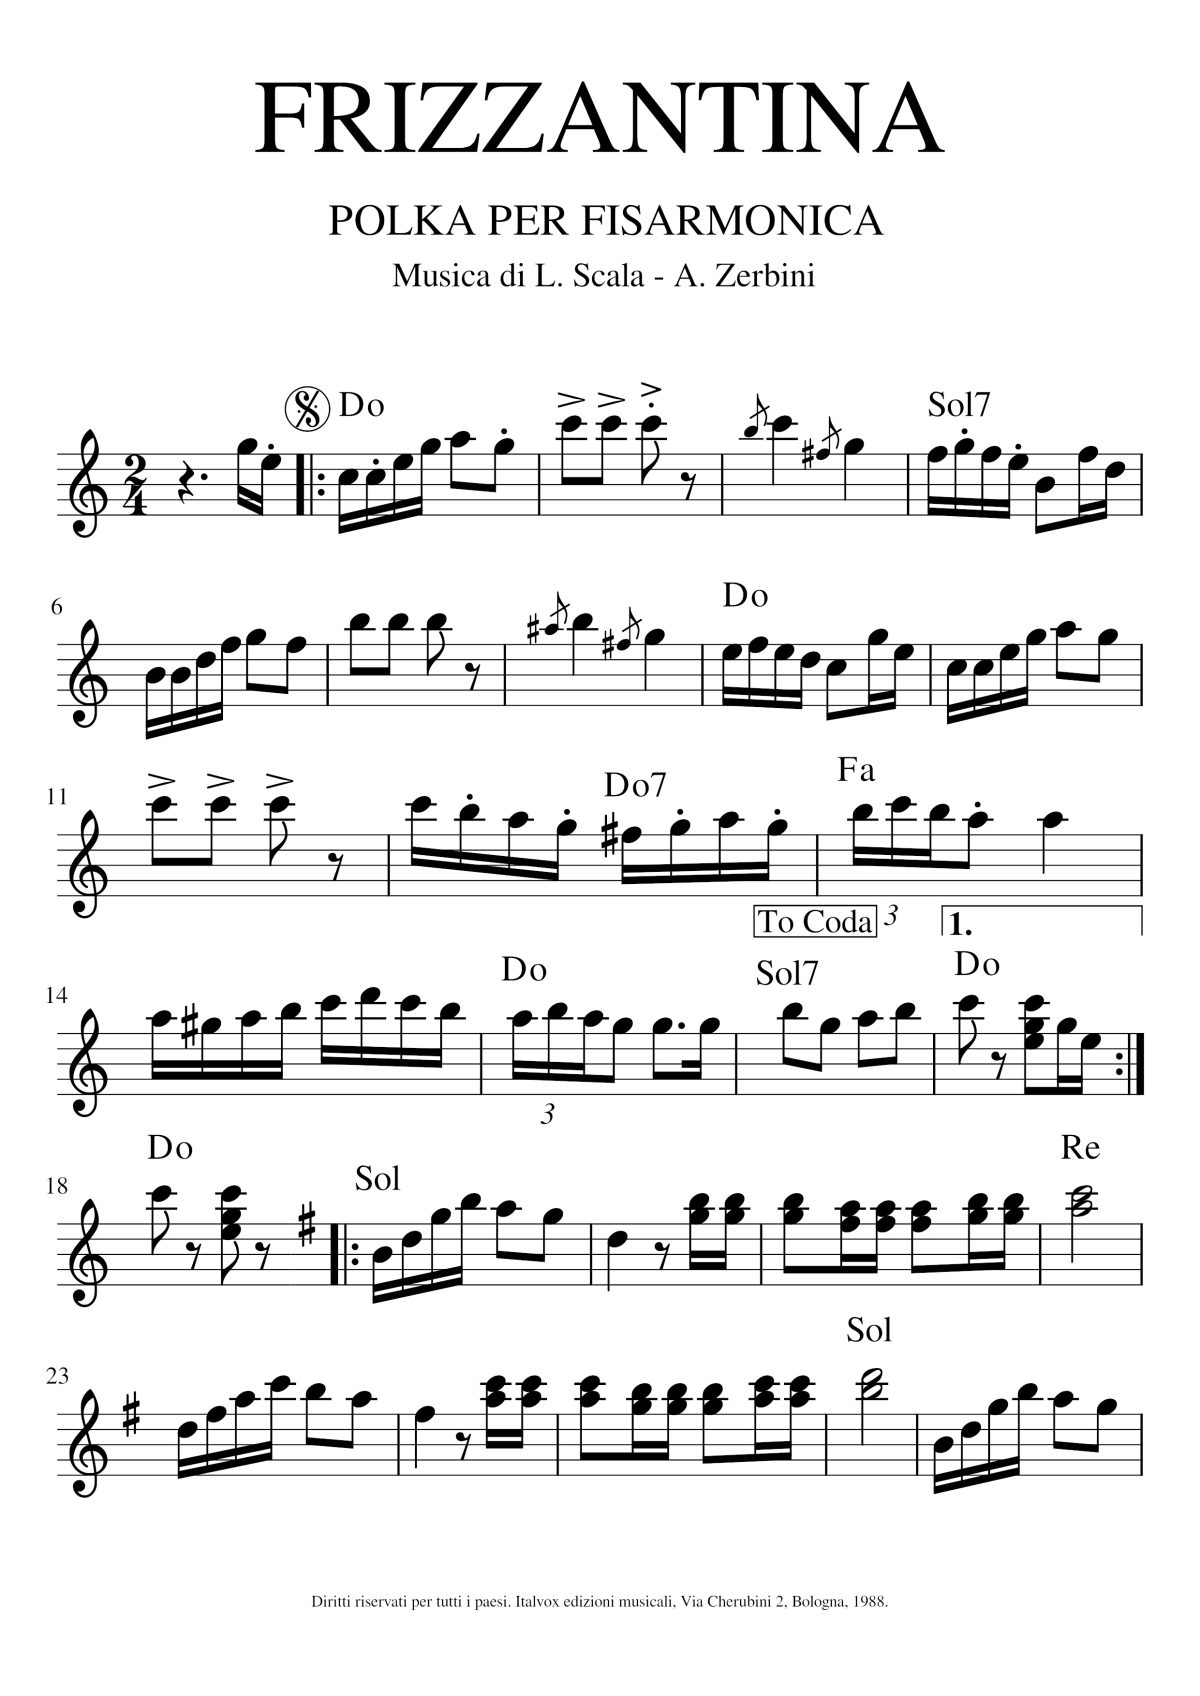 Spartito musicale. Frizzantina. Polka per Fisarmonica. Musica di Scala-Zerbini, 1988